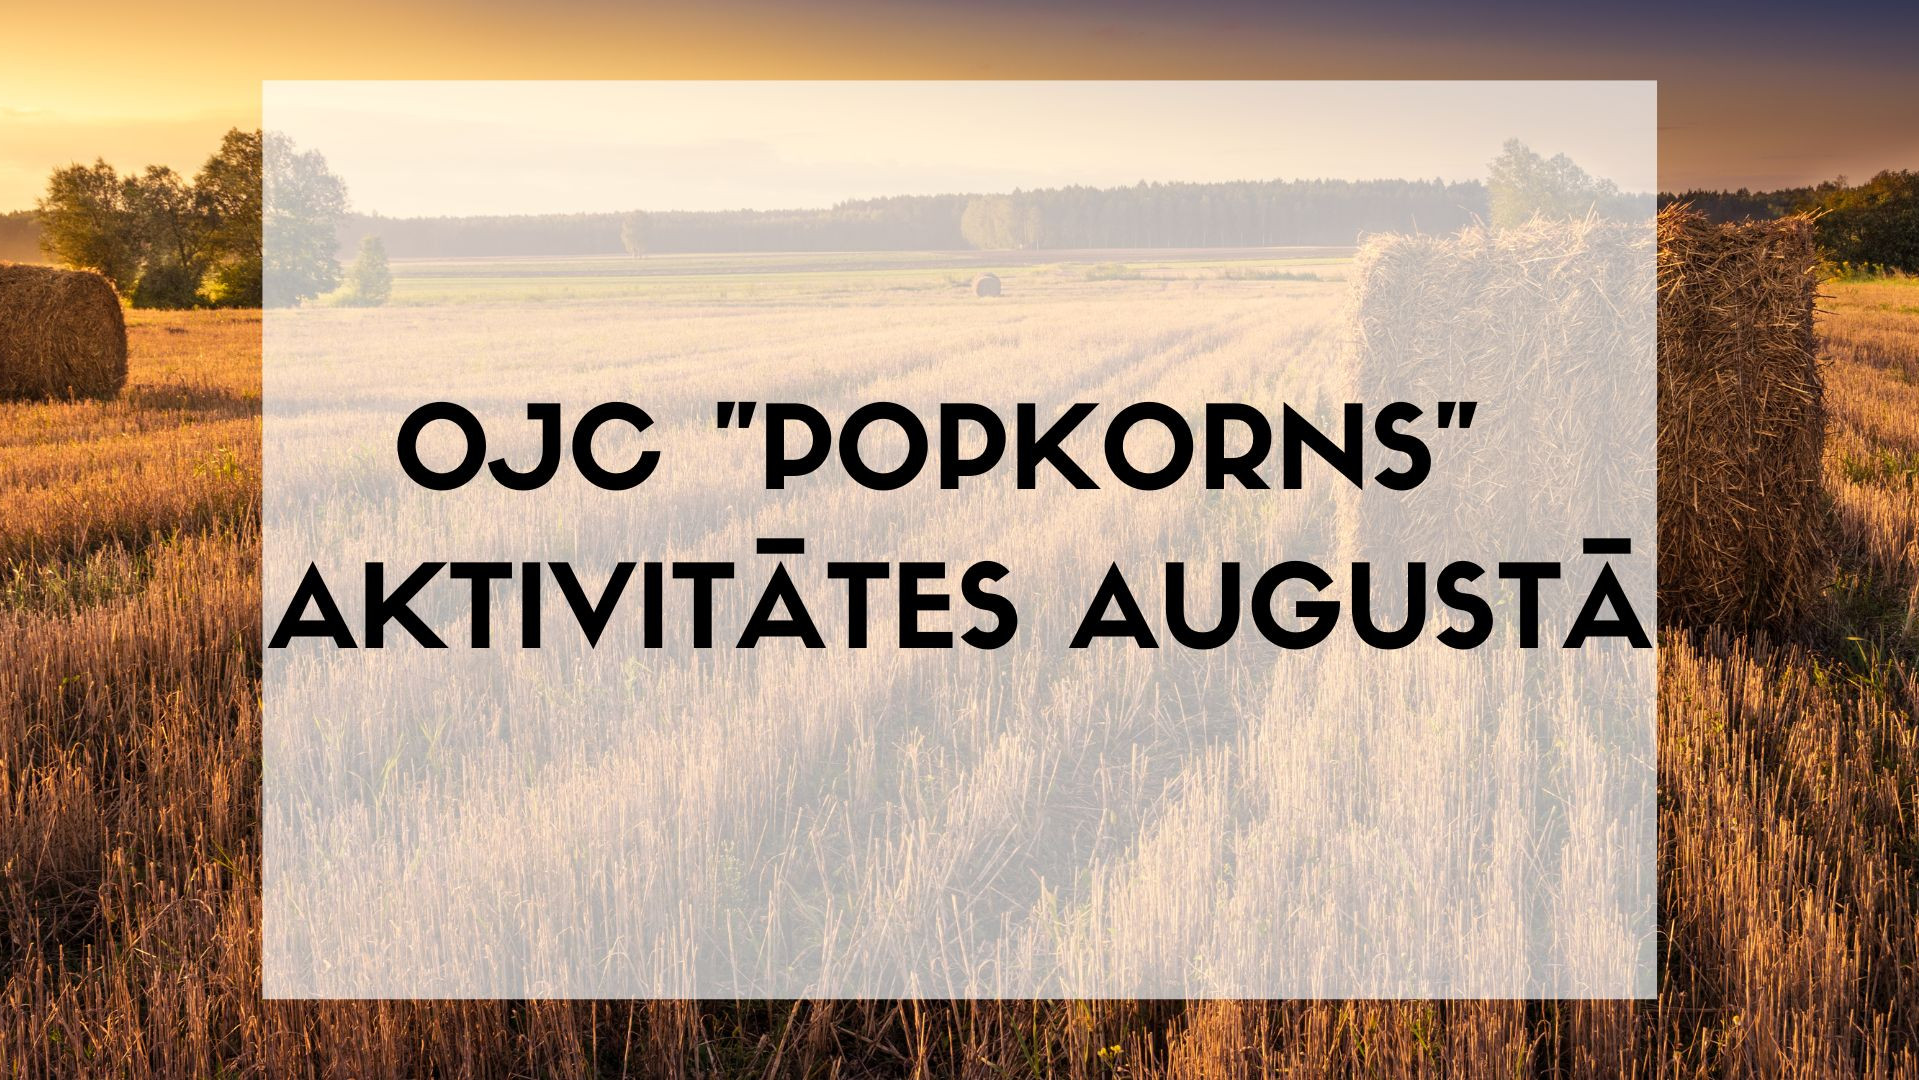 OJC "Popkorns" pasākumi augustā